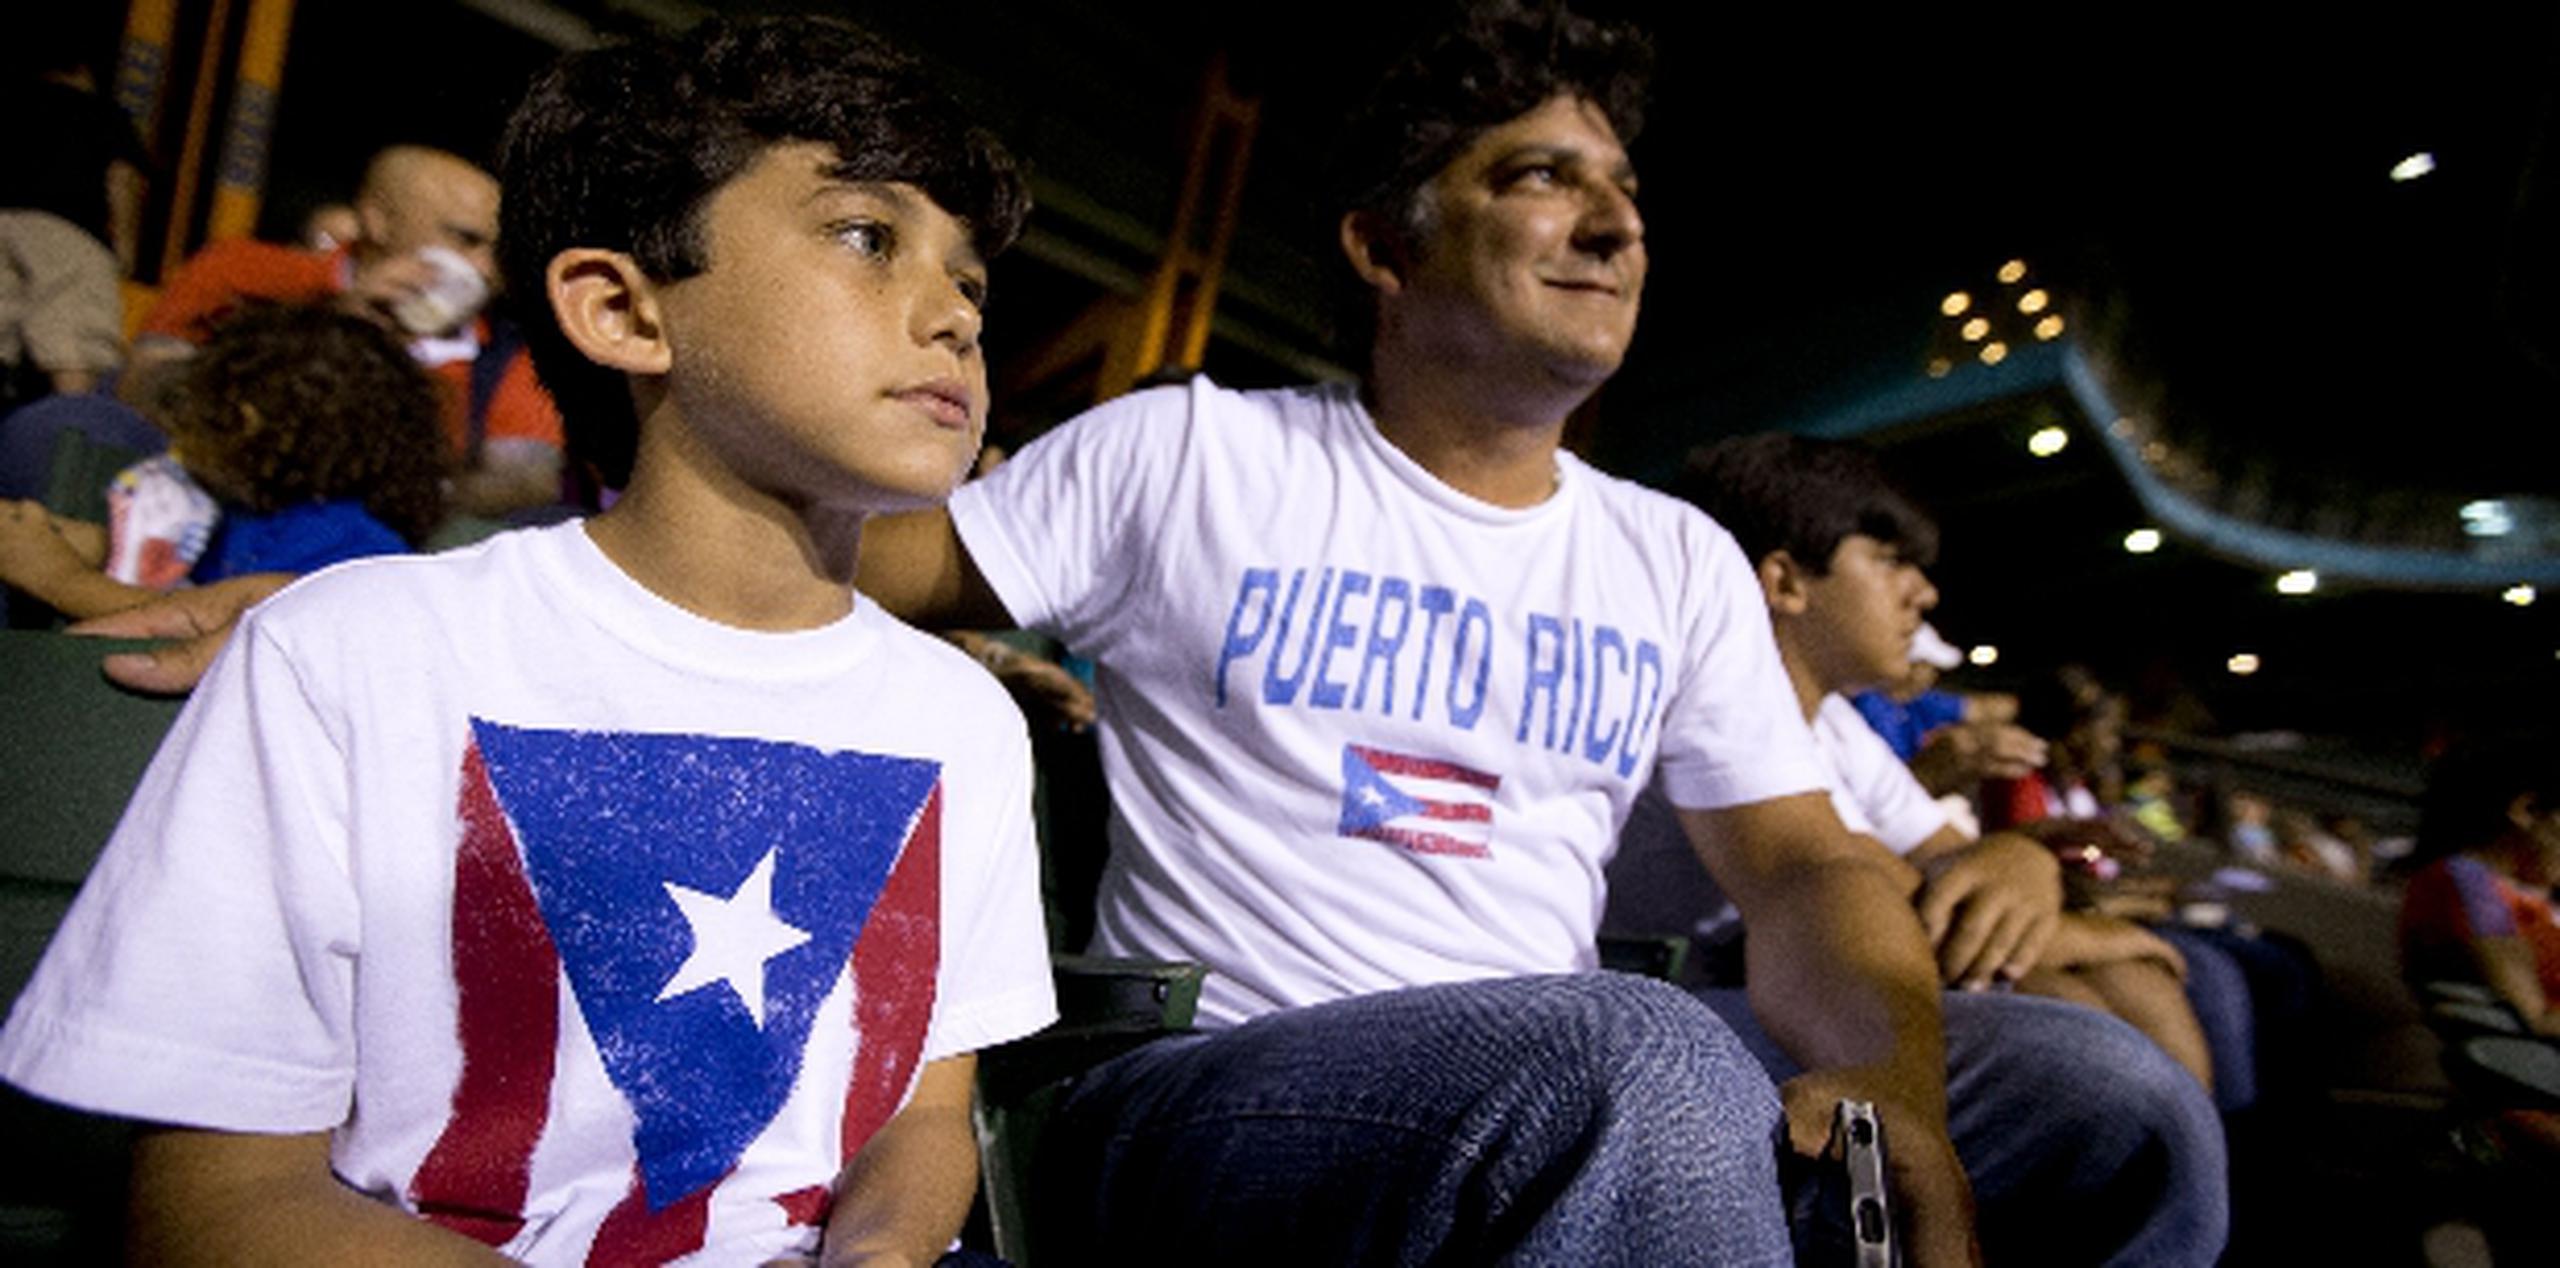 Diego Muñoz presenció ayer en compañía de su familia su primer partido de fútbol de equipos profesionales.  (tonito.zayas@gfrmedia.com)